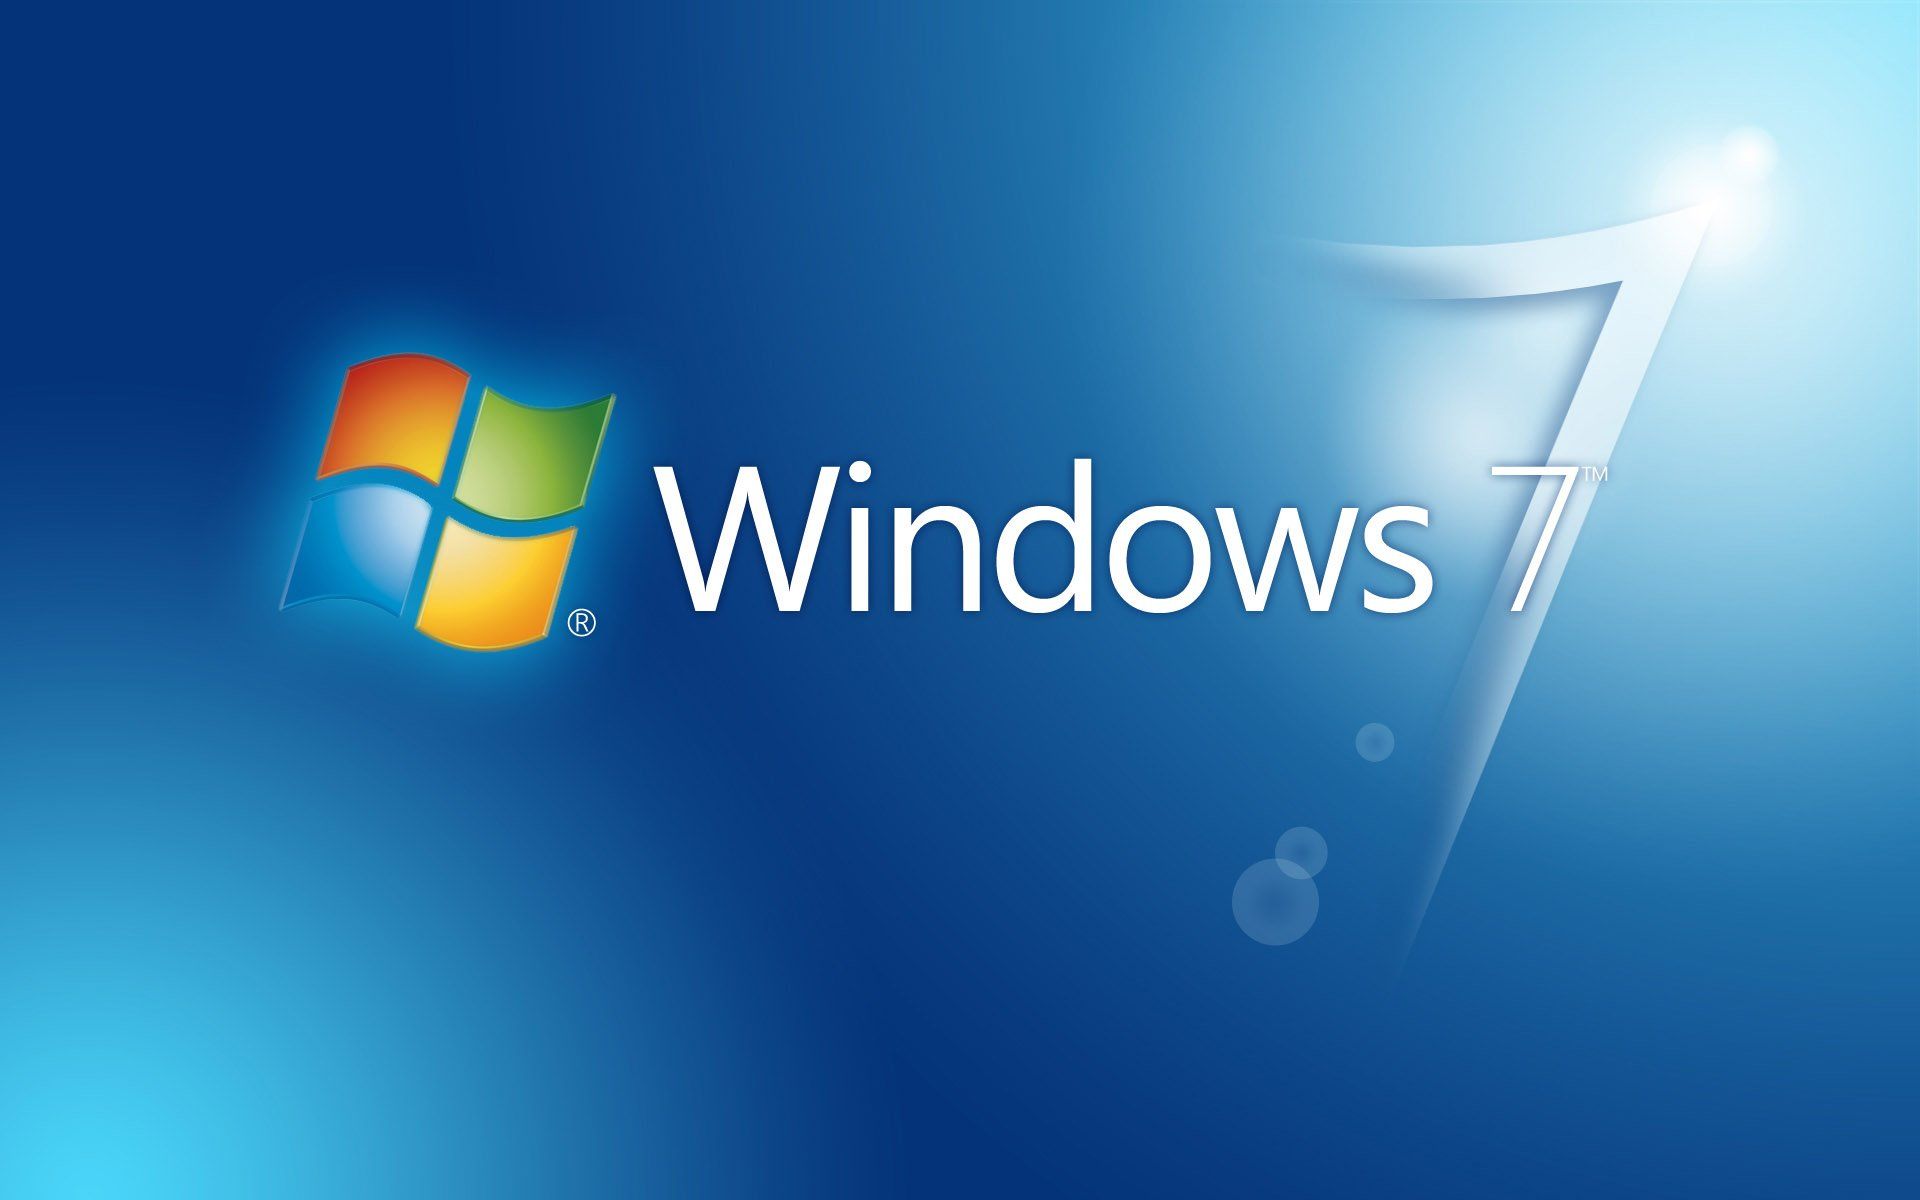 Télécharger Windows 7 gratuitement